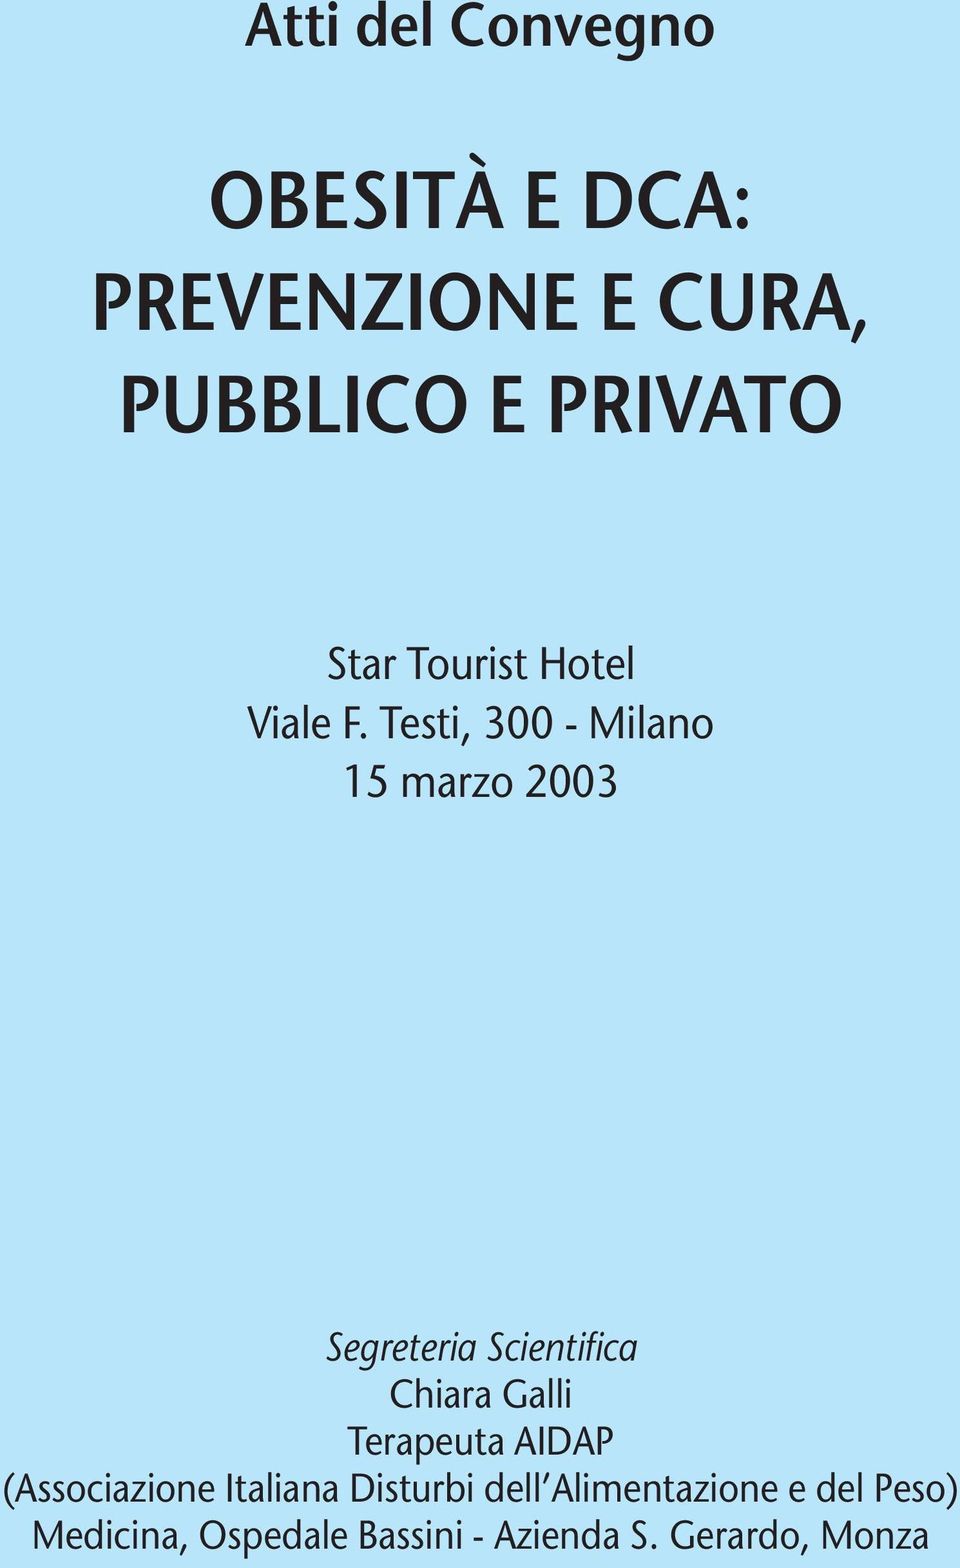 Testi, 300 - Milano 15 marzo 2003 Segreteria Scientifica Chiara Galli